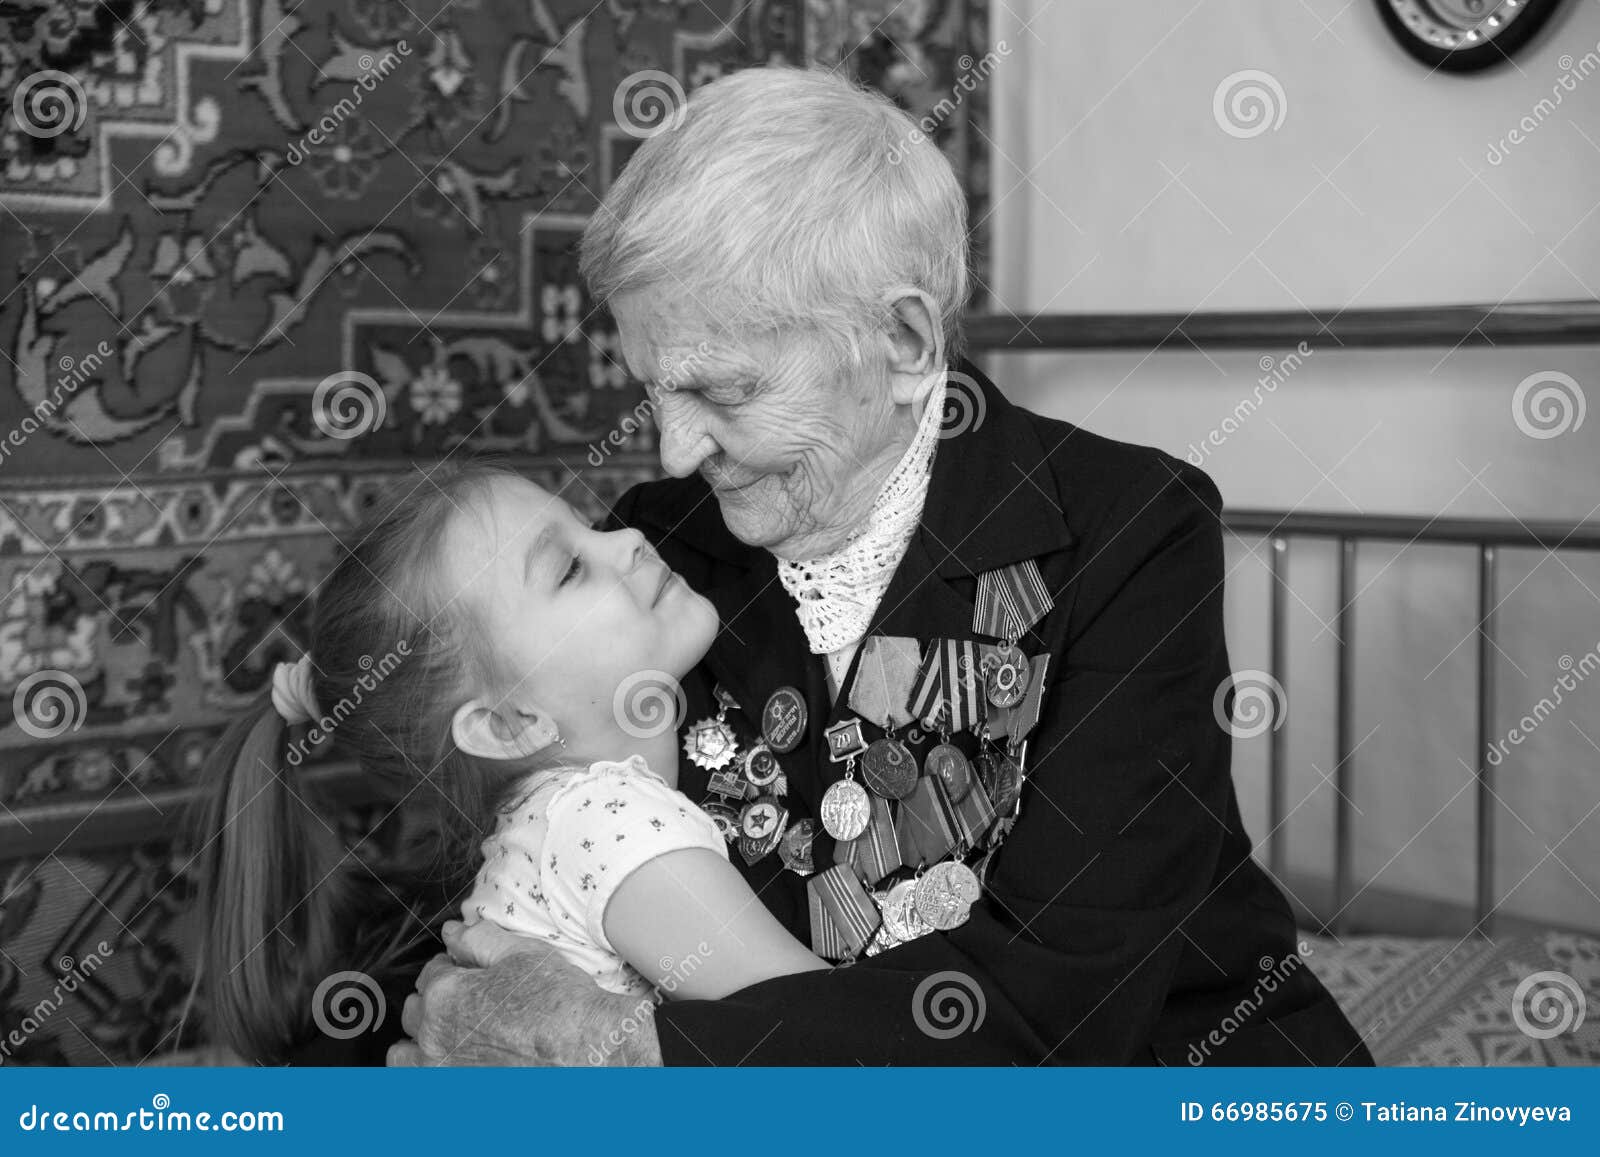 Куни дед и внучка